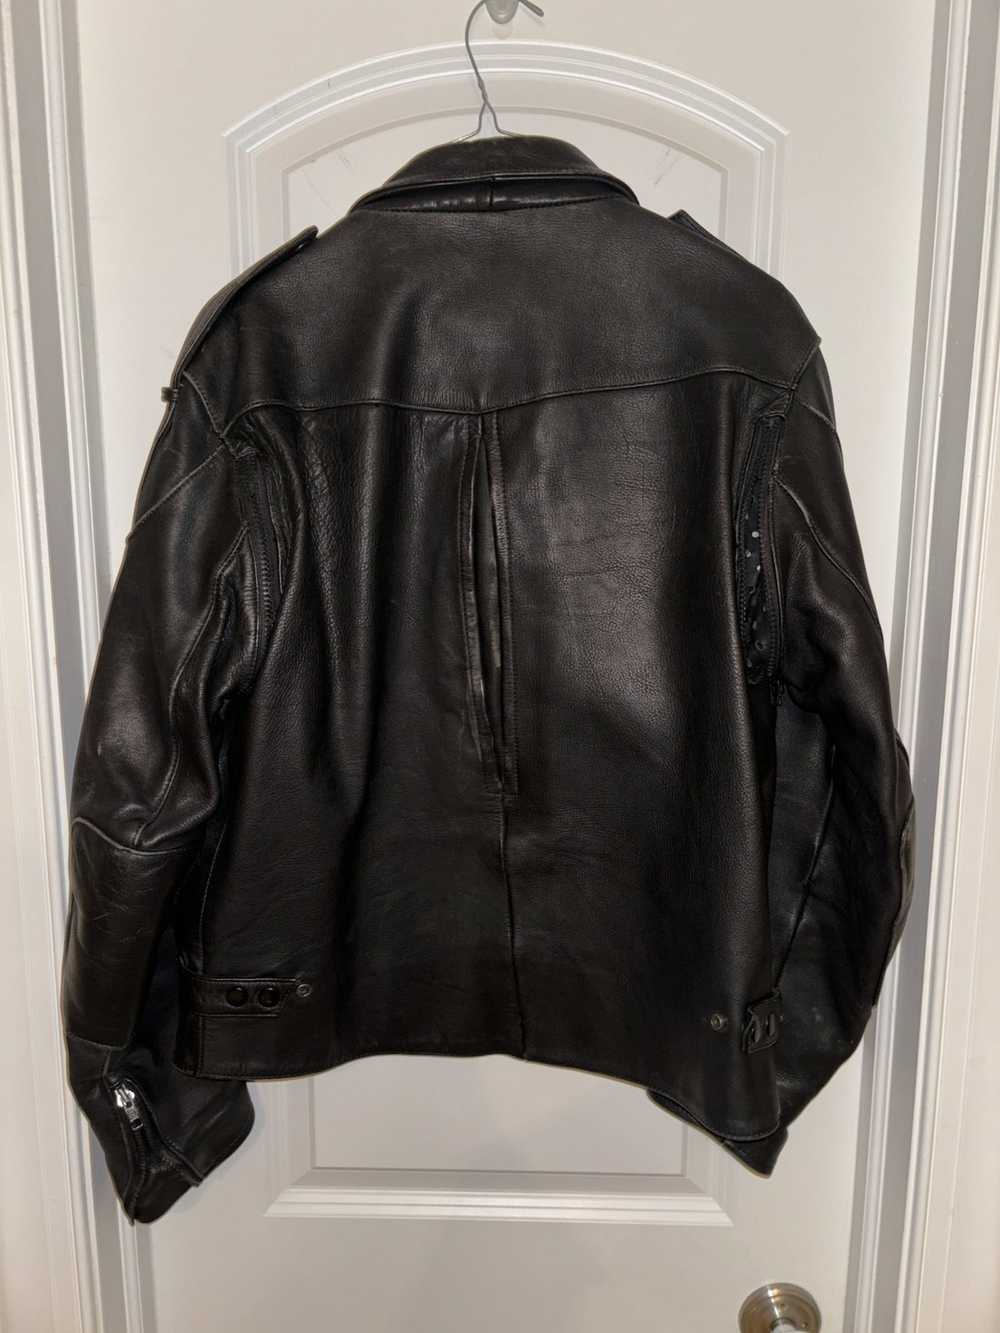 Harley Davidson Harley Davidson leather jacket - image 2